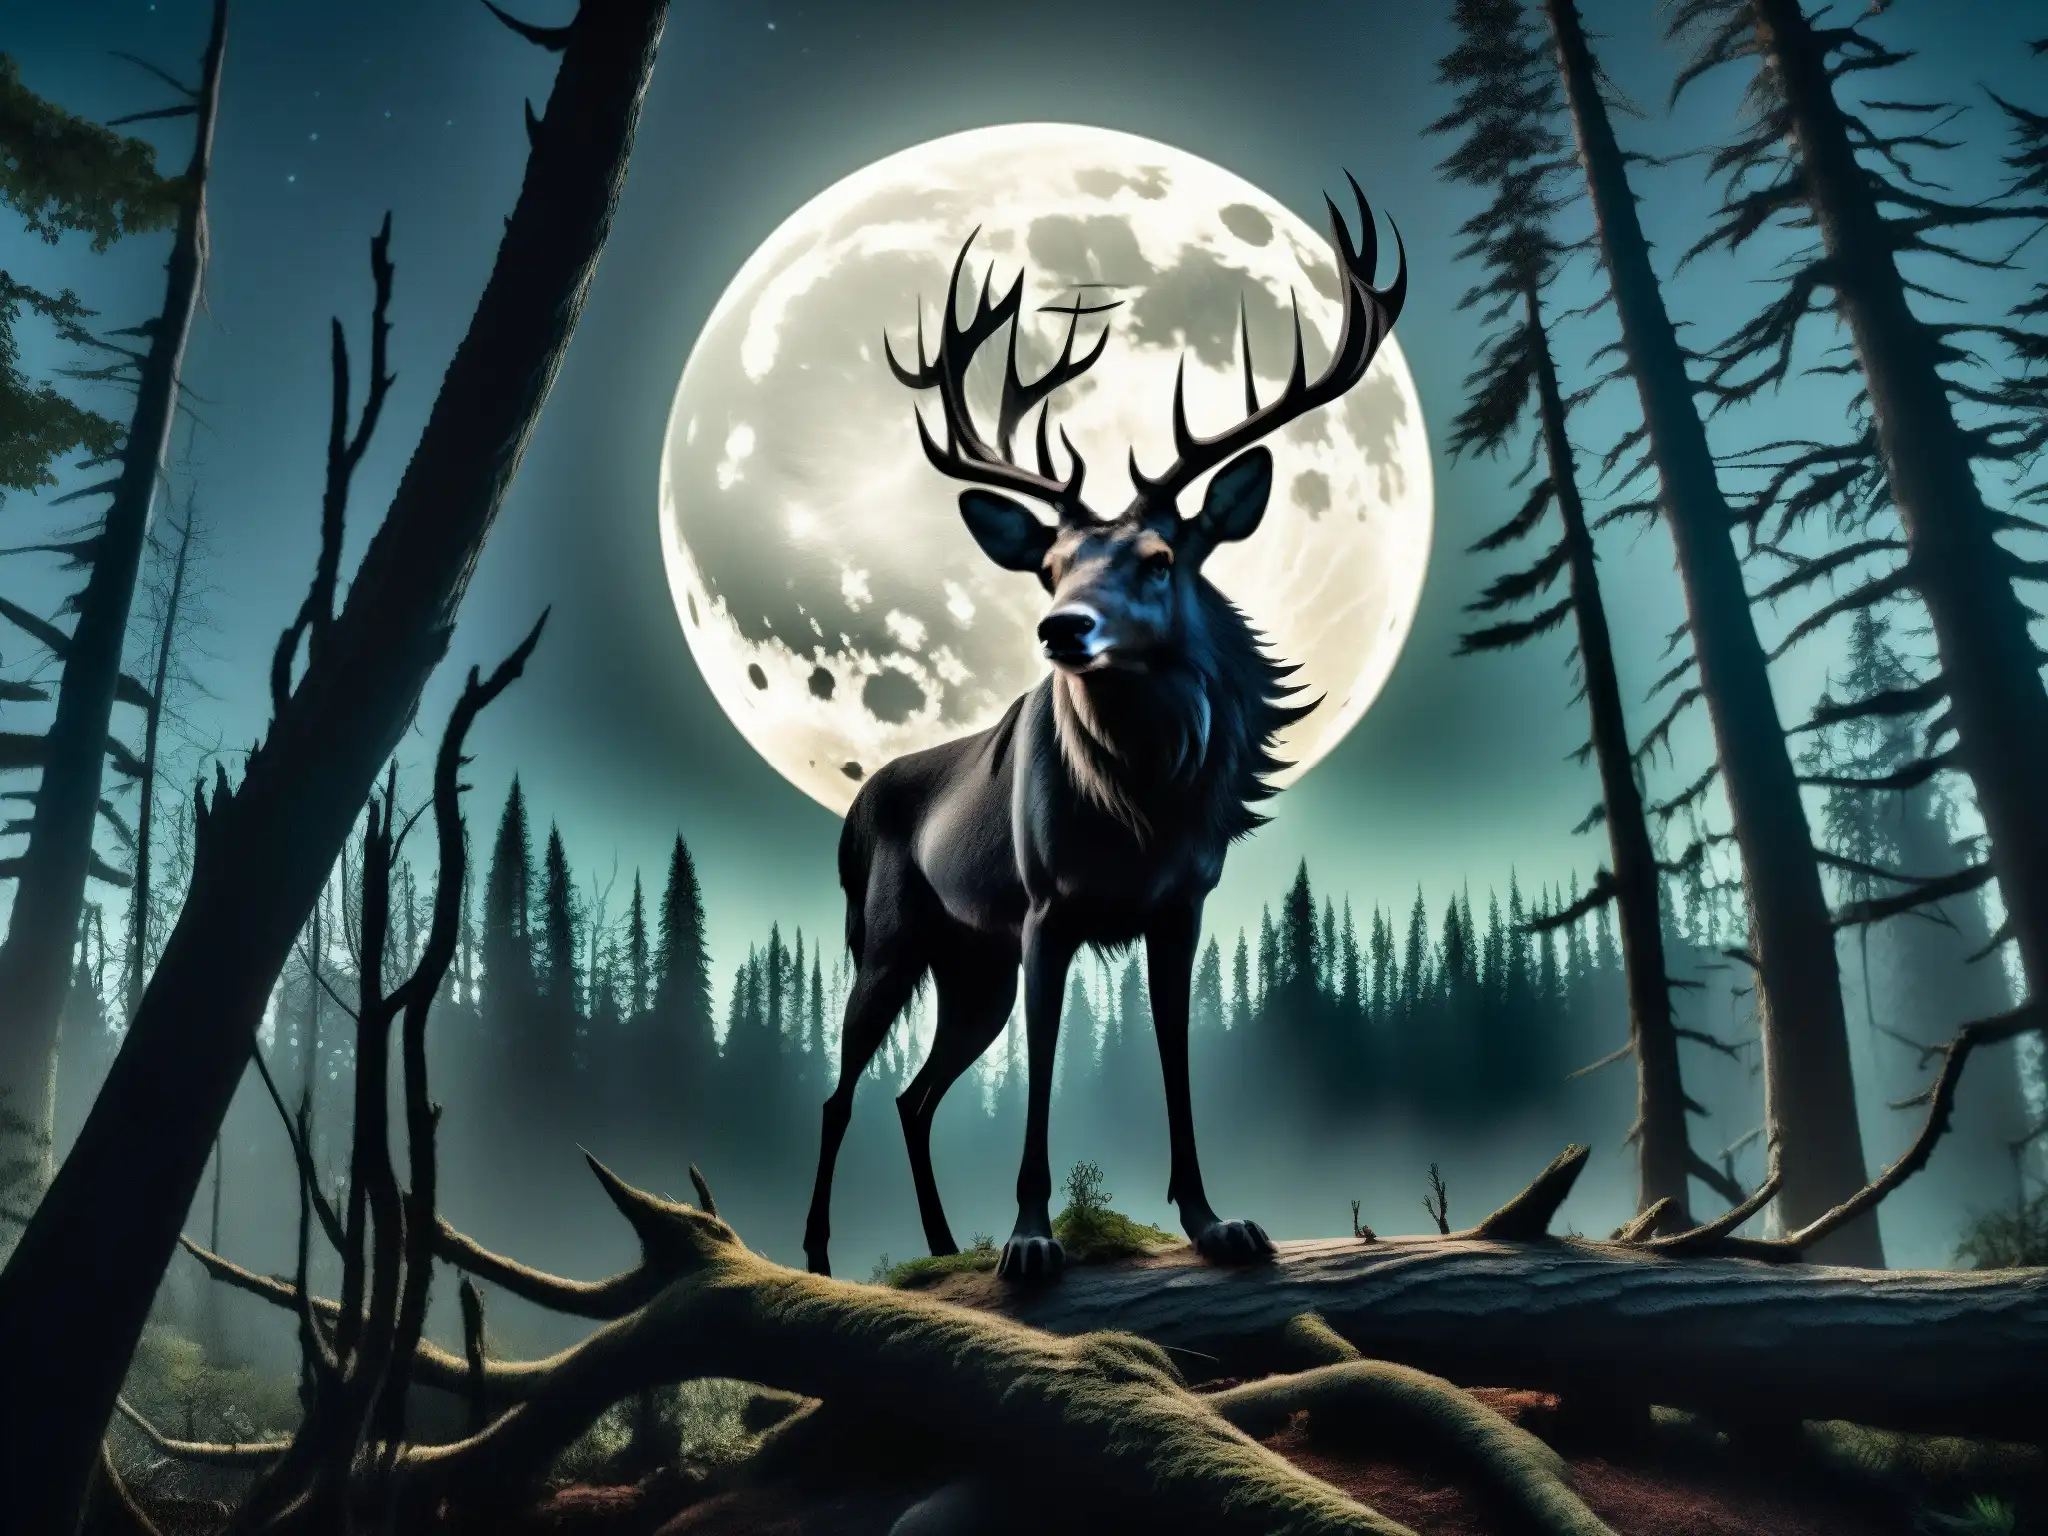 Un bosque oscuro y misterioso de noche, con la luna iluminando los árboles retorcidos